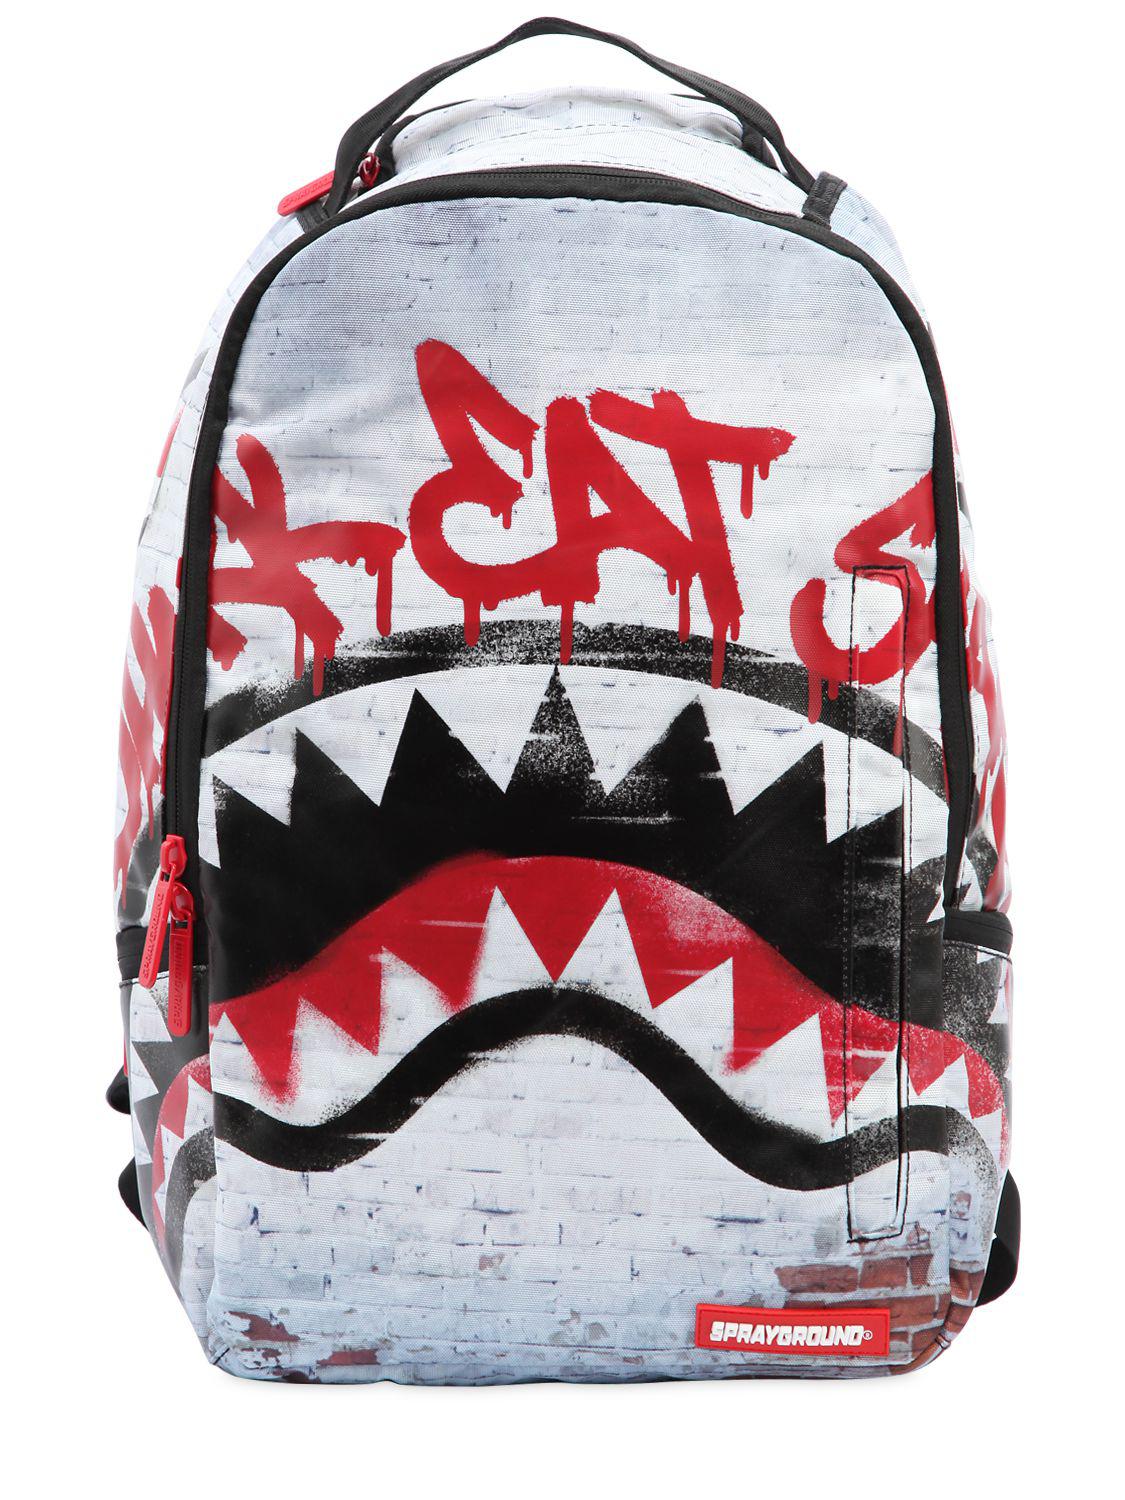 Lyst - Sprayground Shark Eat Shark Backpack in Red